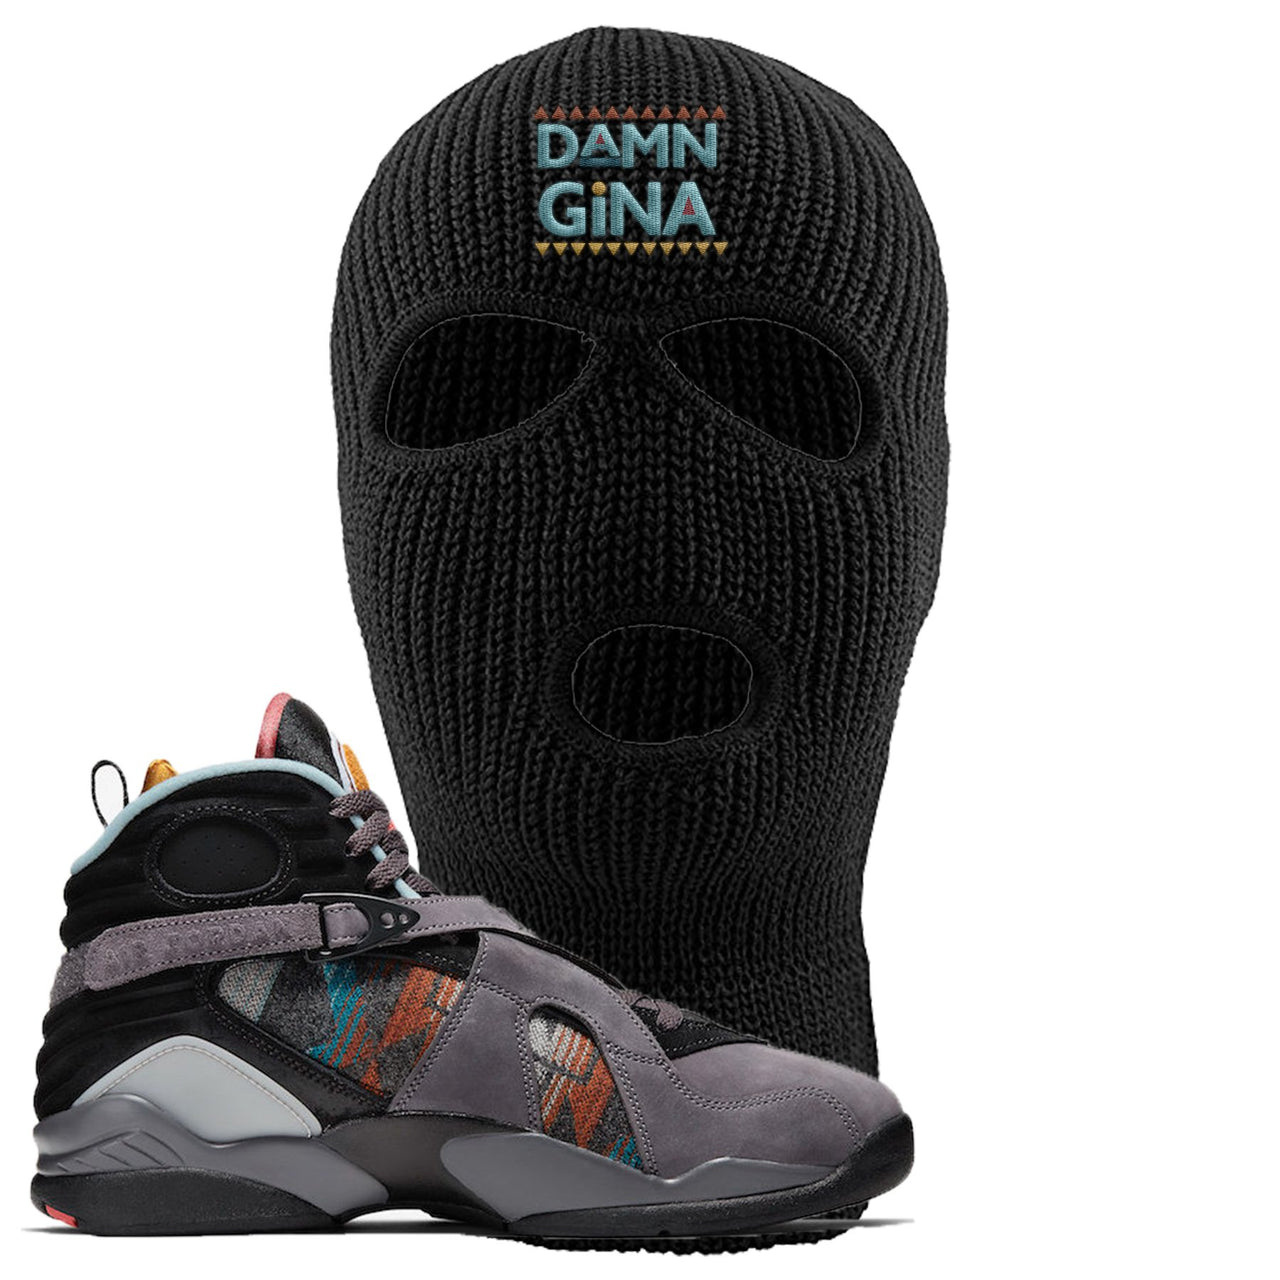 Jordan 8 N7 Pendleton Damn Gina Black Sneaker Hook Up Ski Mask